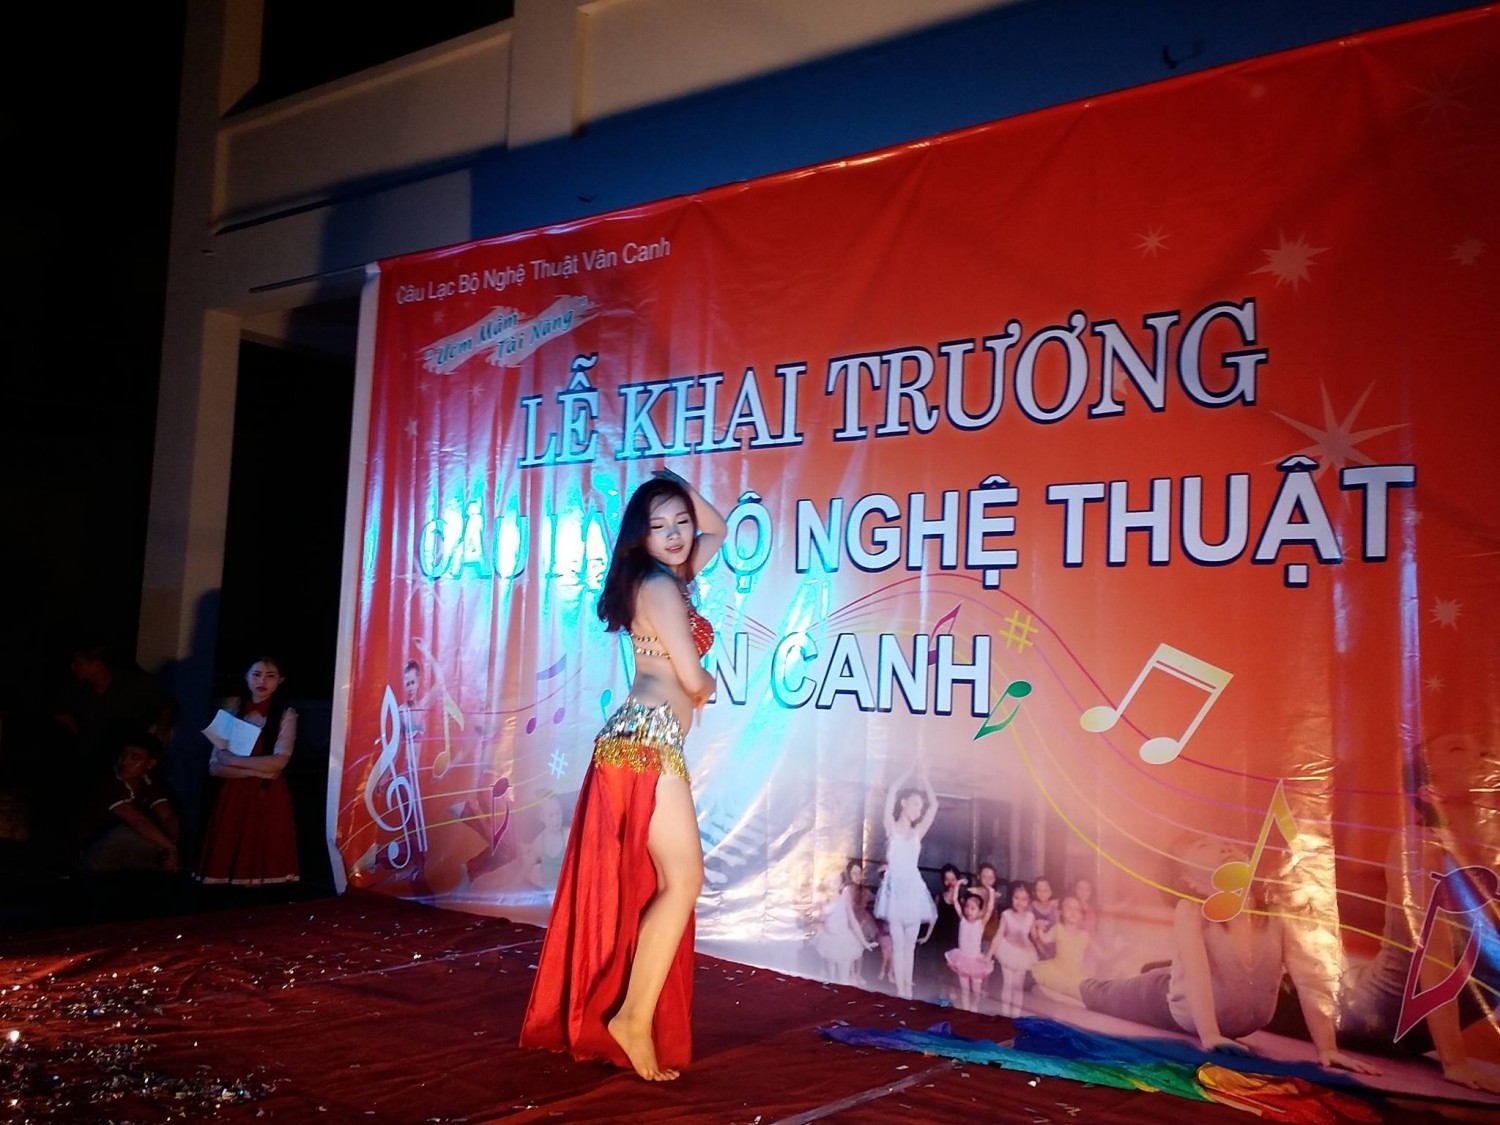 Cho thuê nhóm múa, thuê nhóm nhảy, thuê diễn viên múa tại Hà Nội